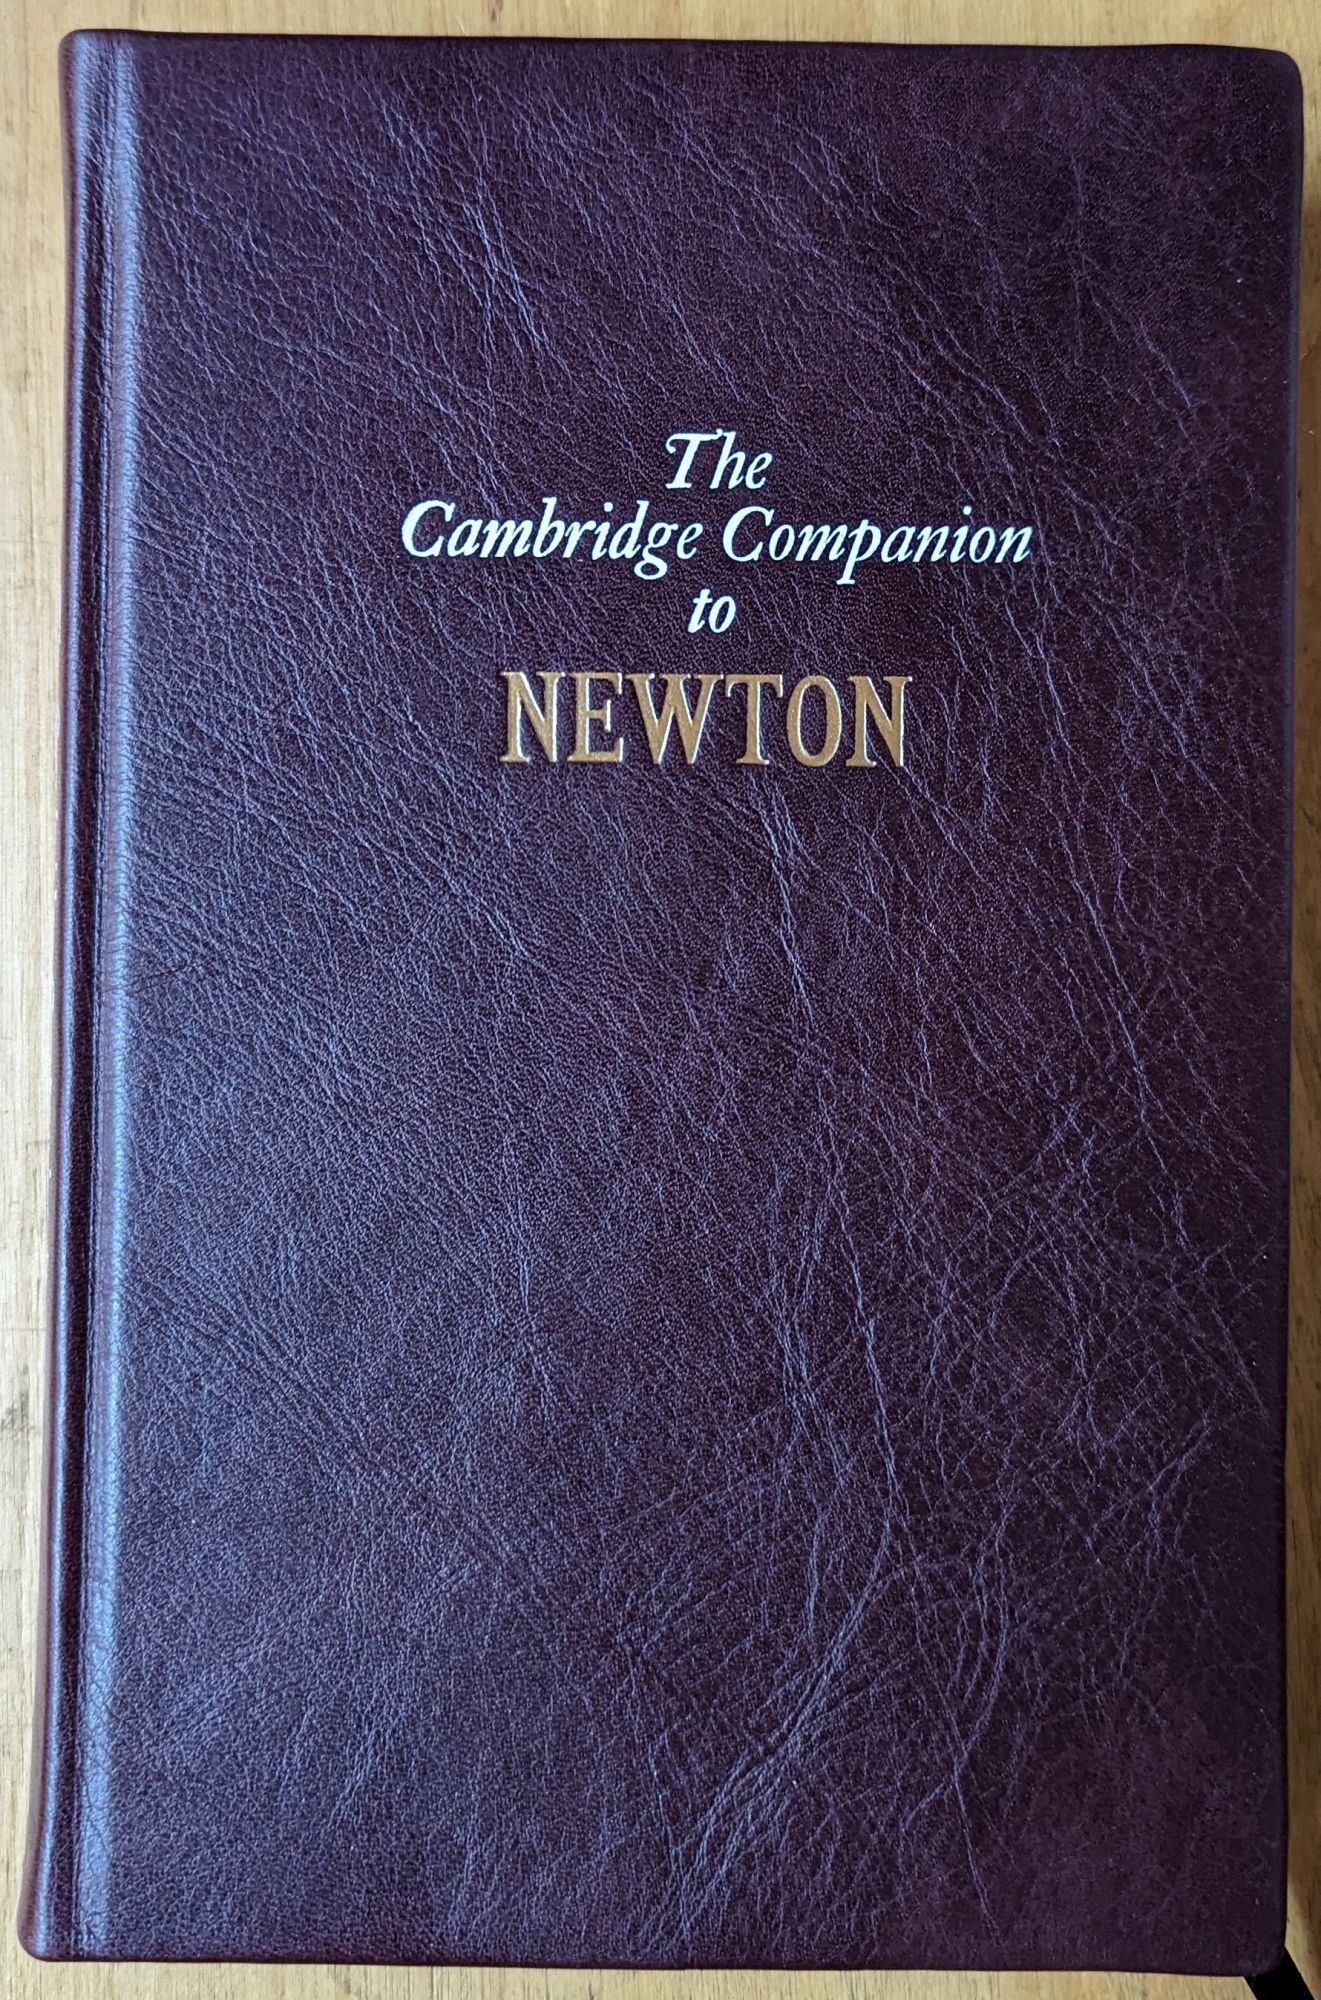 The Cambridge Companion to Newton - I. Bernard Cohen; Geroge E. Smith (eds)